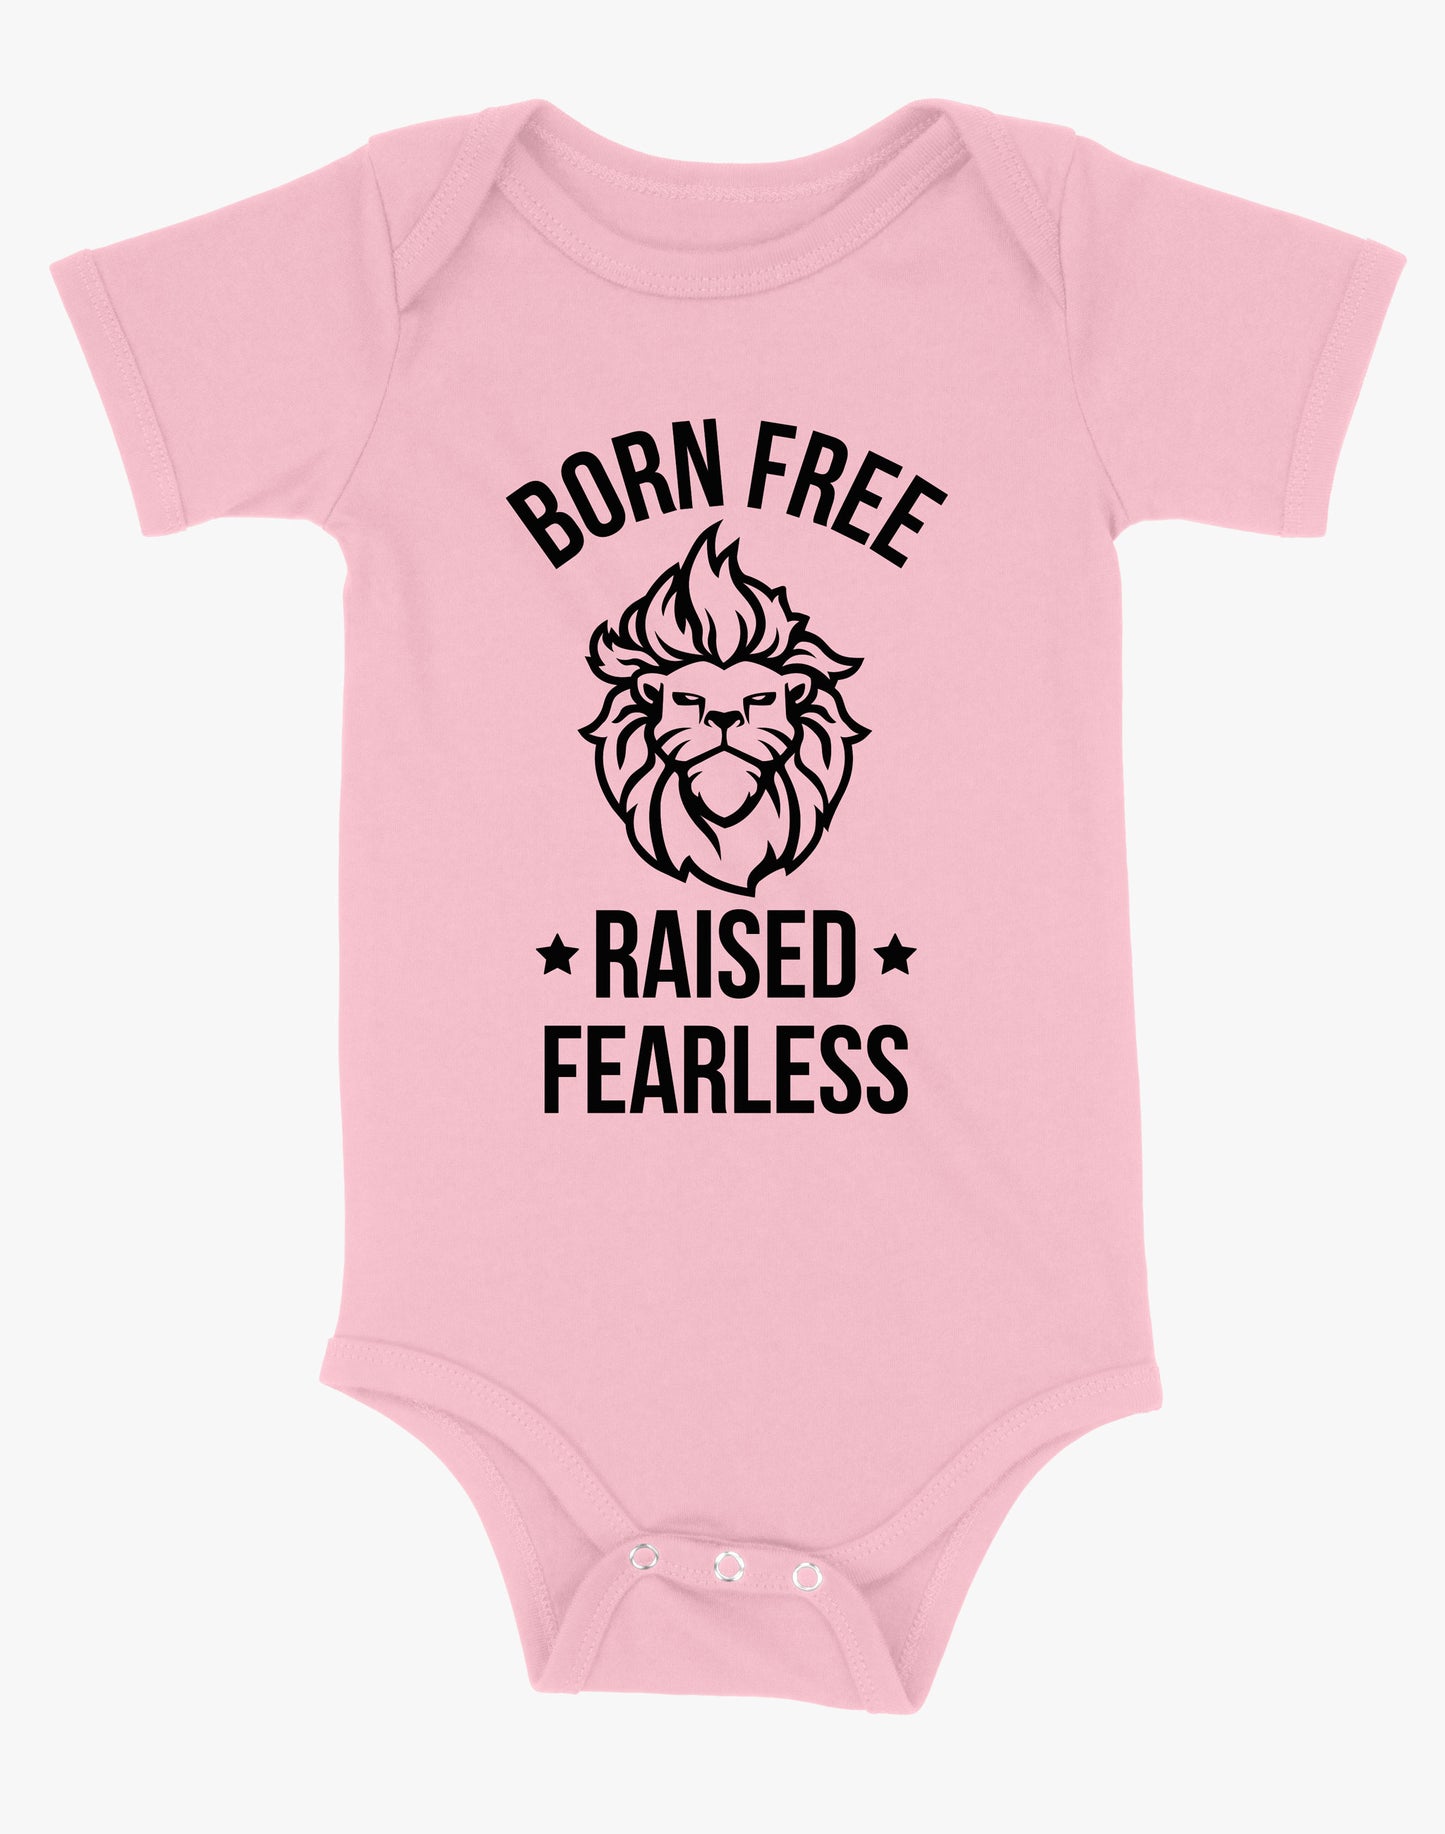 Baby Born Free Raised Fearless Onsie - Pink